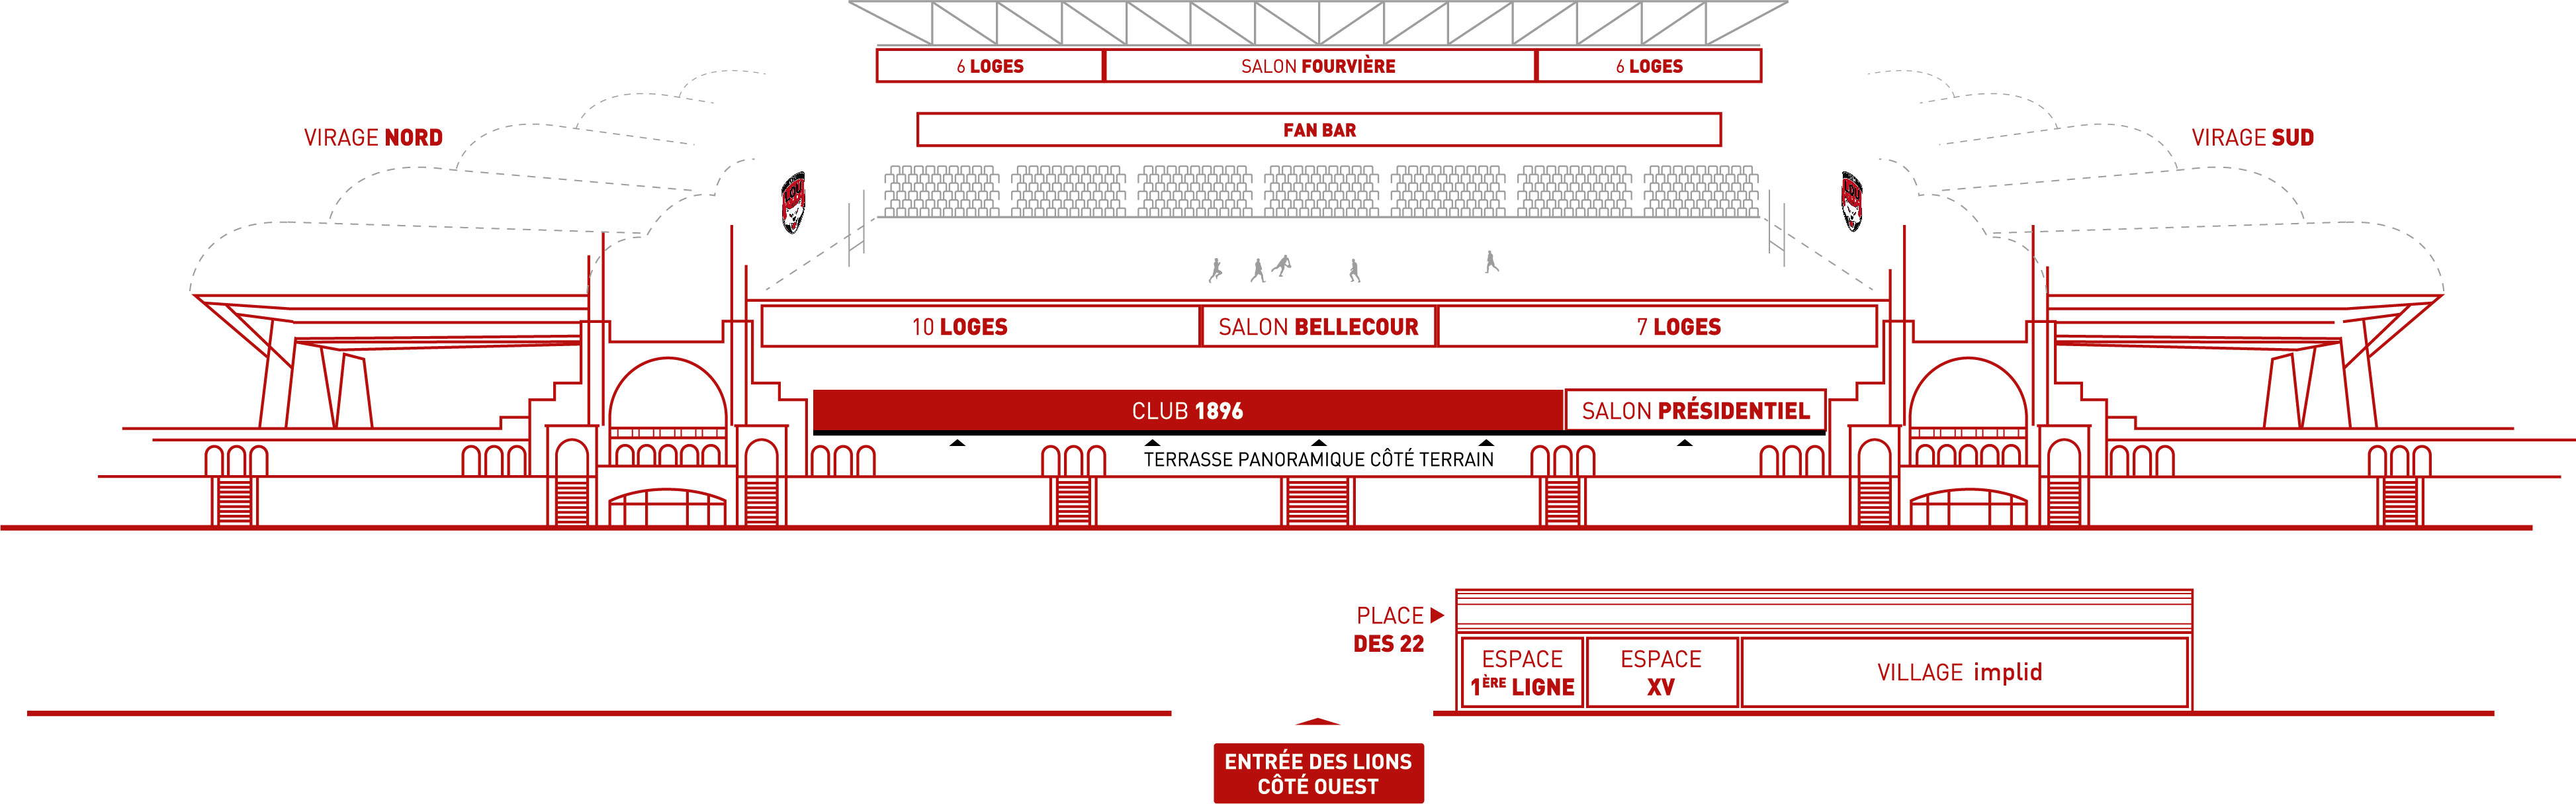 plan_schématique_club_1896_matmut_stadium